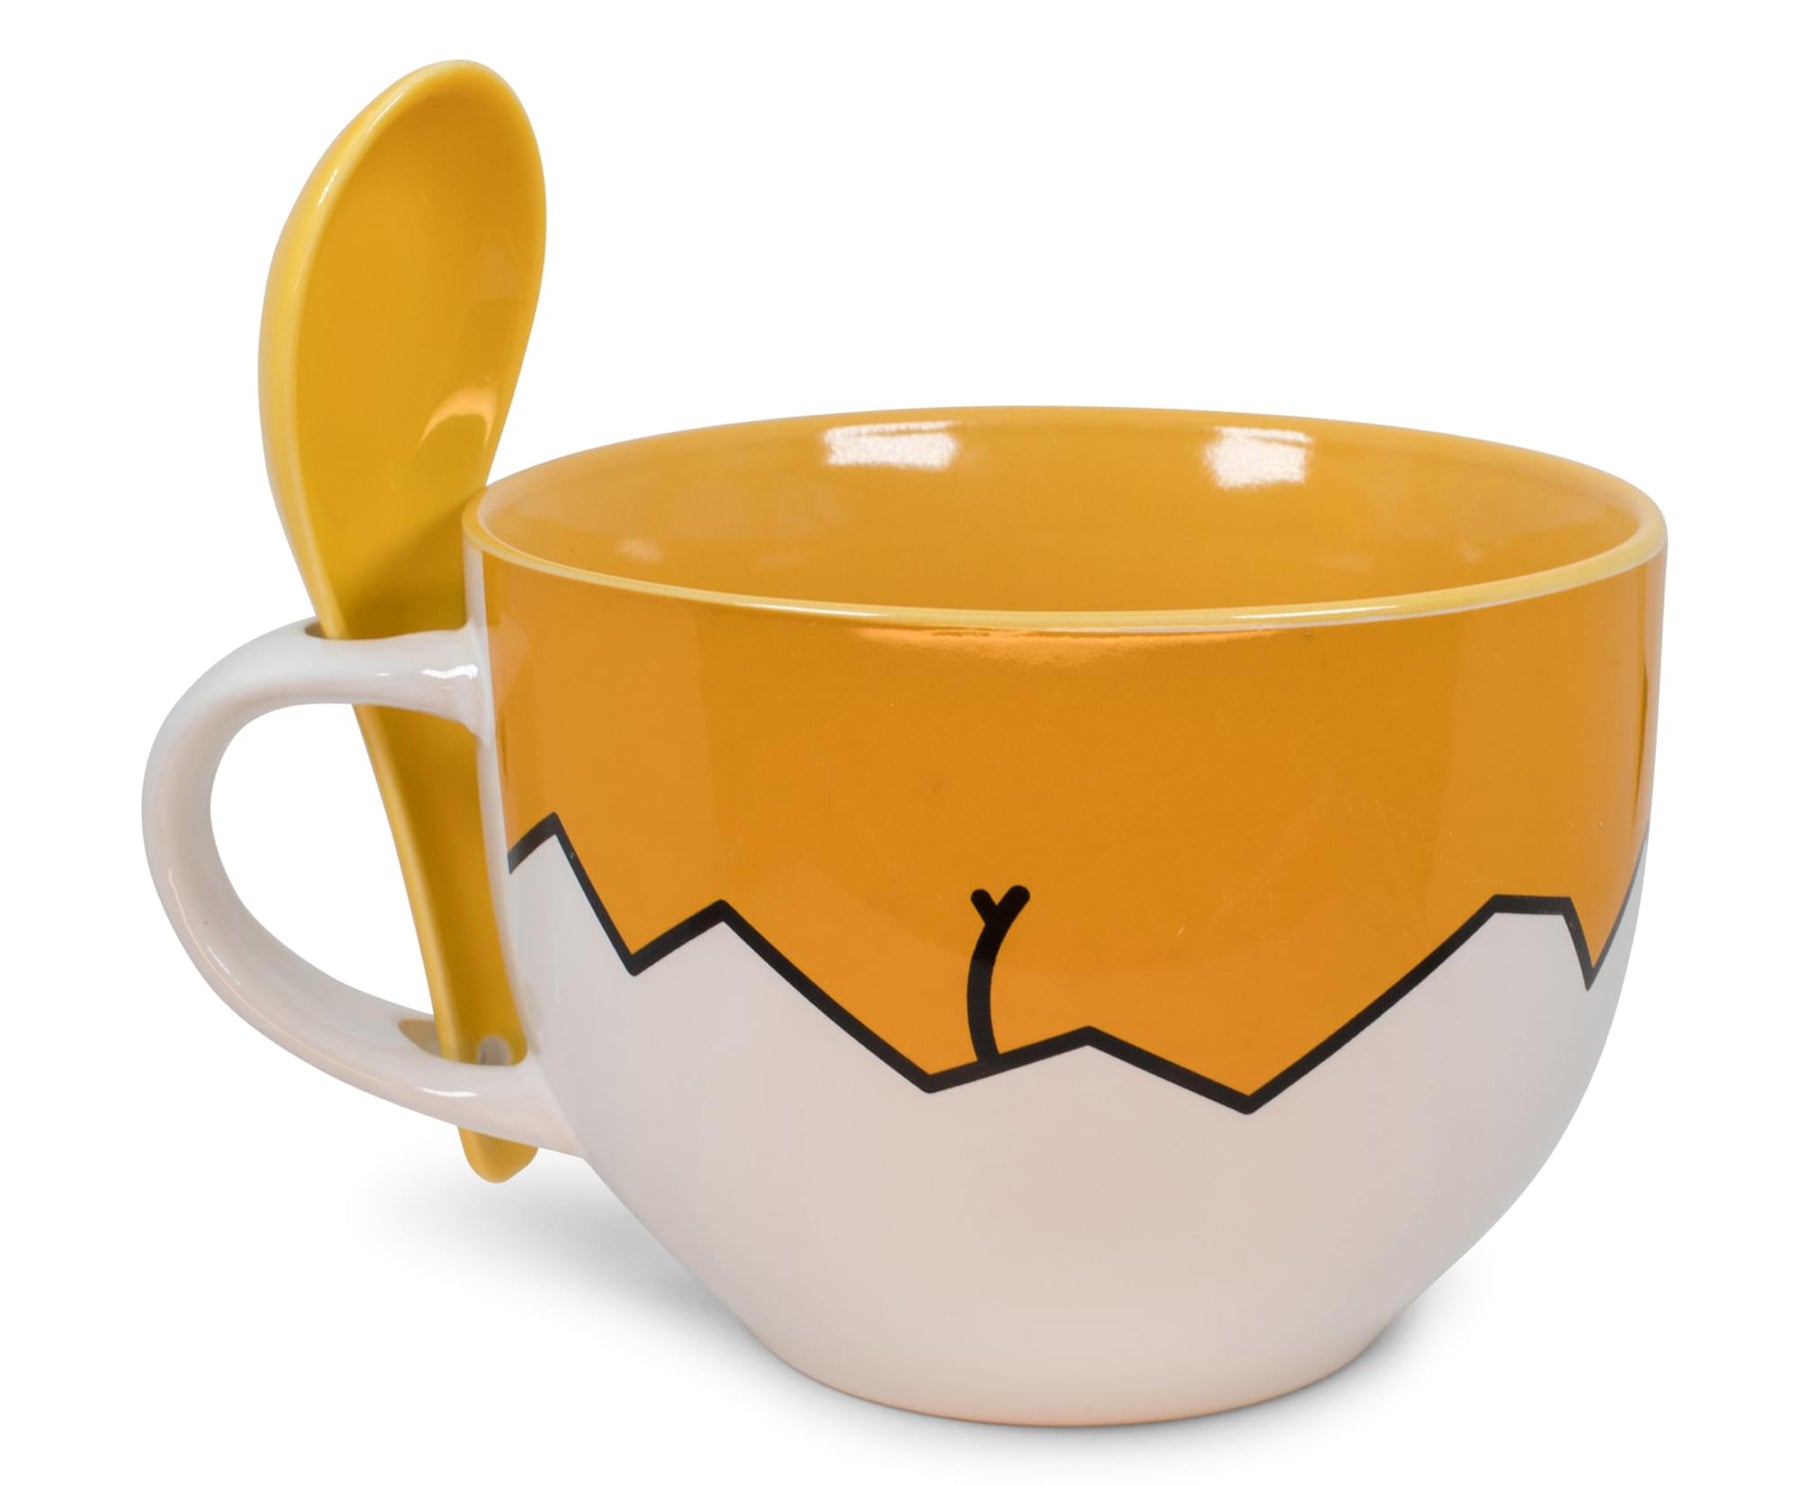 Sanrio Gudetama Ceramic Soup Mug With Spoon | Holds 24 Ounces